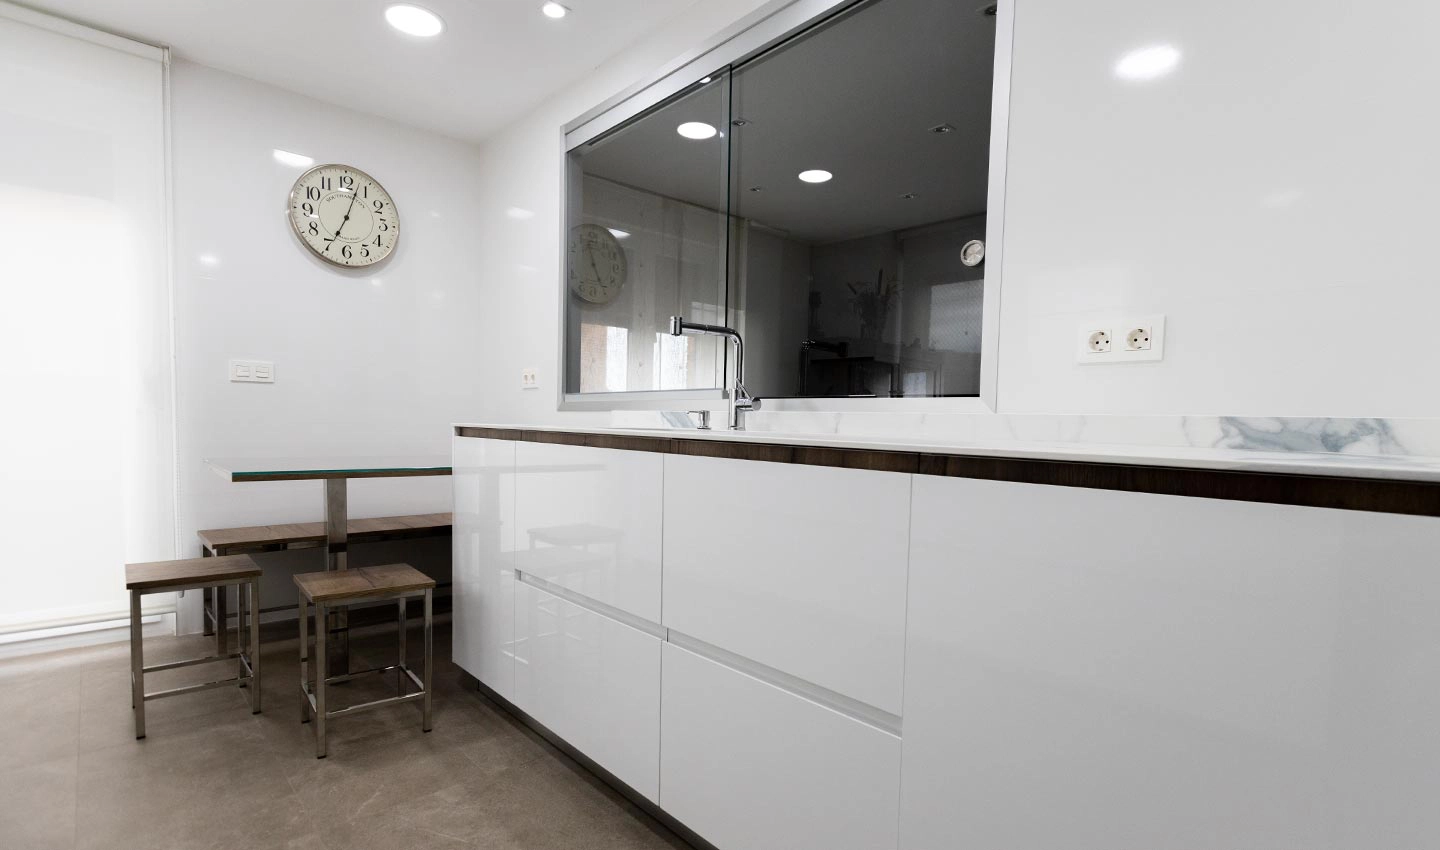 Vista de encimera de cocina moderna con caráter nórdico y espacio para almacenaje